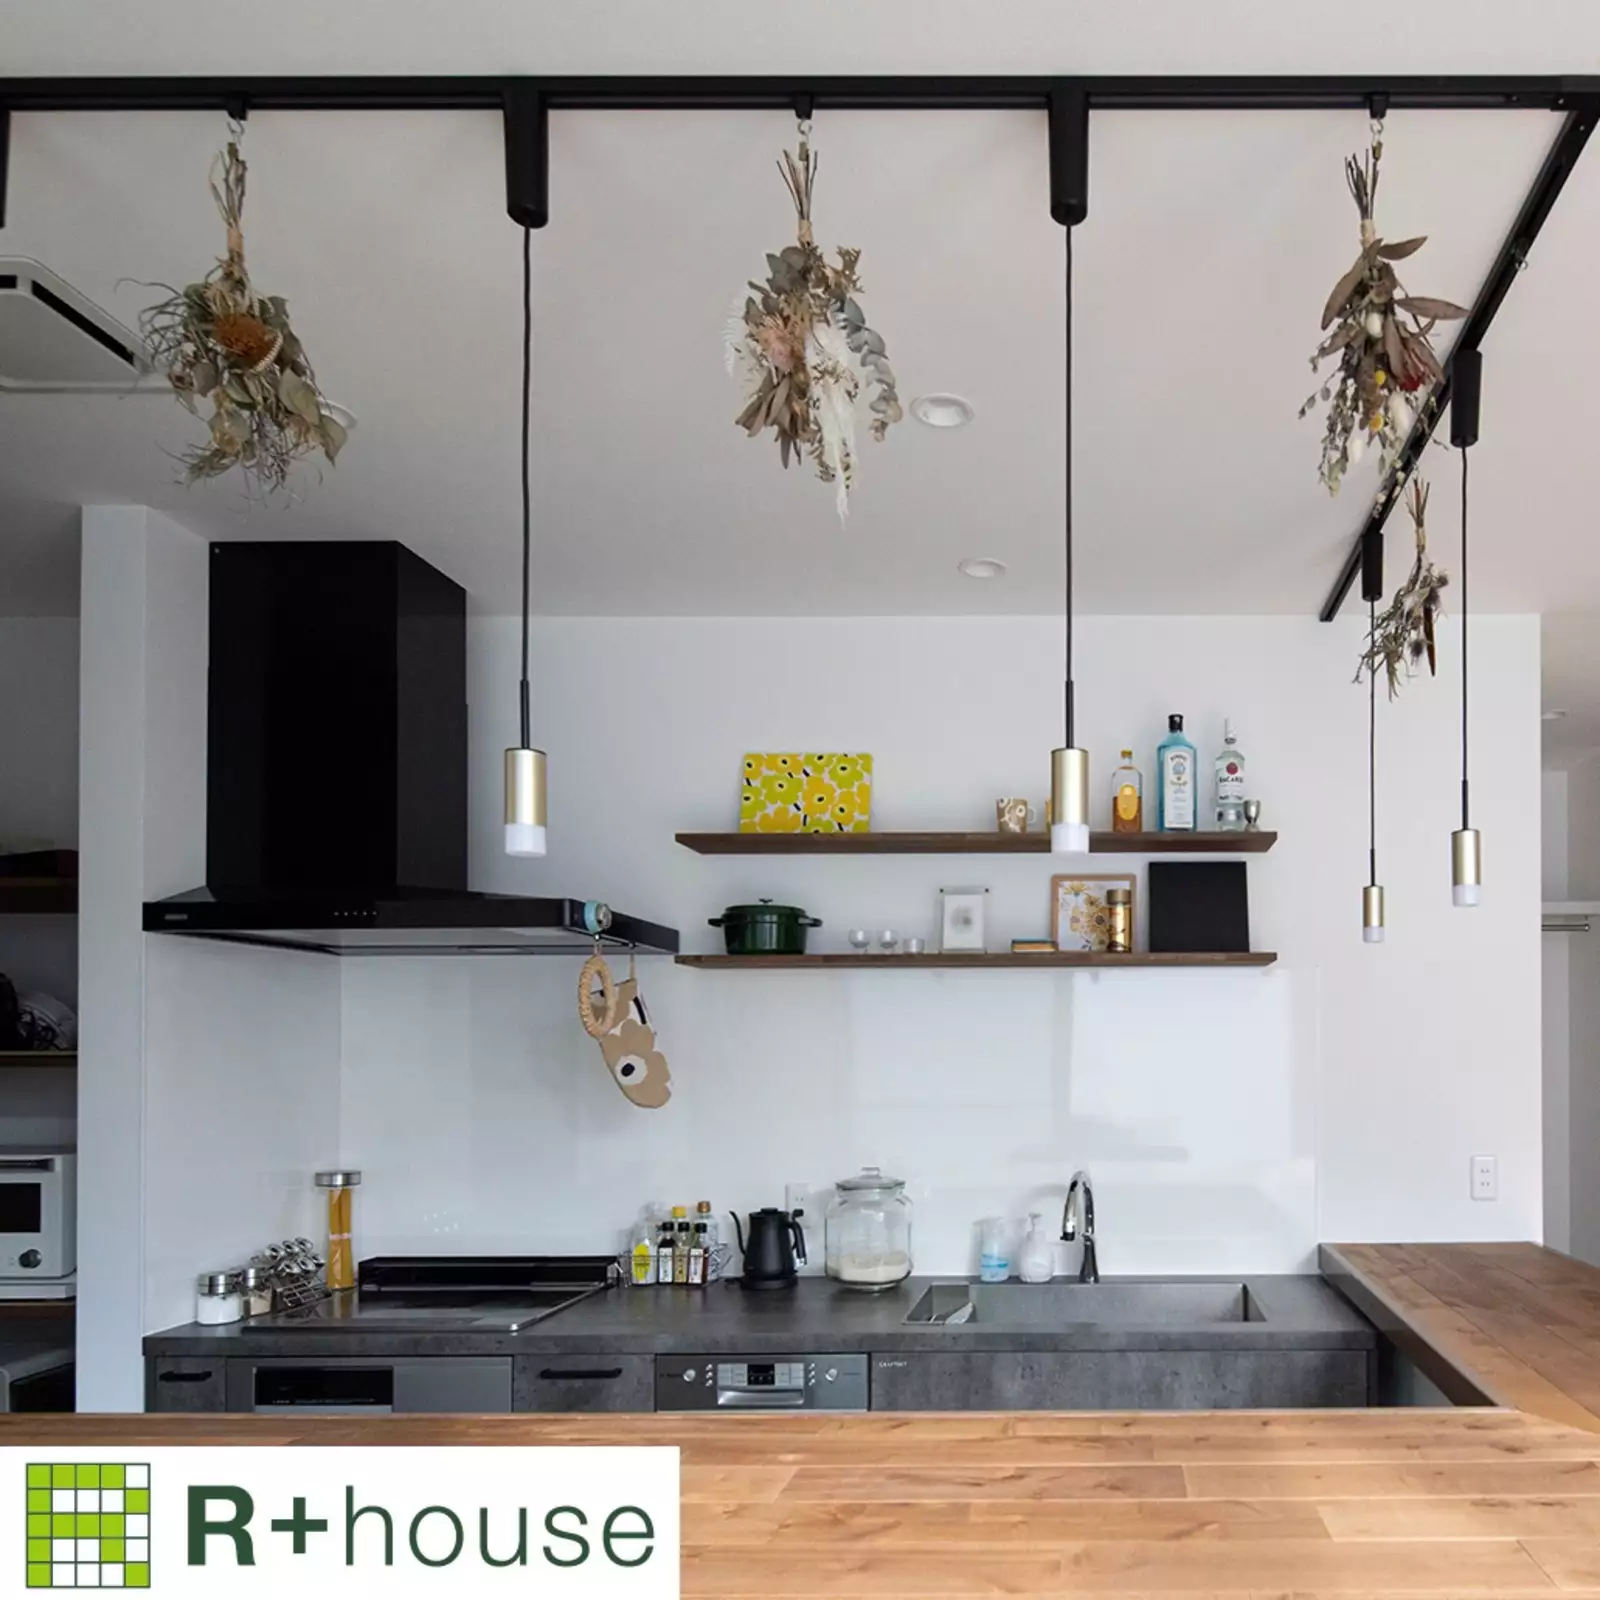 R+houseの物件のカウンターキッチンの写真です。L字型のカウンターキッチン白の壁にグレーのキッチン台、木目のカウンターが際立つ